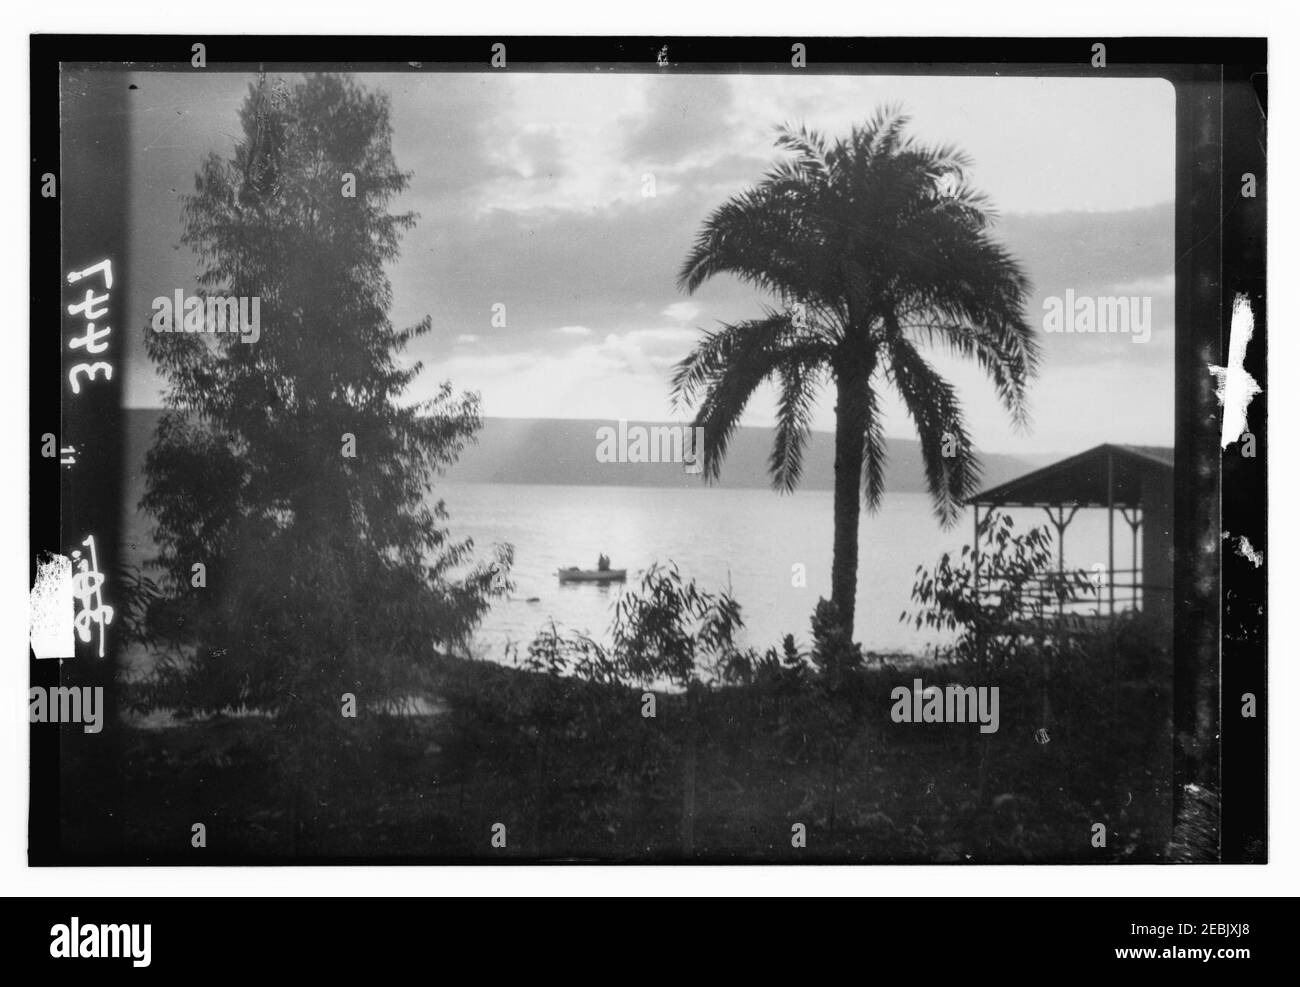 Vistas del norte. El lago de Galilea. Amanecer de Tiberias. Pintoresco con palmera y barco Foto de stock